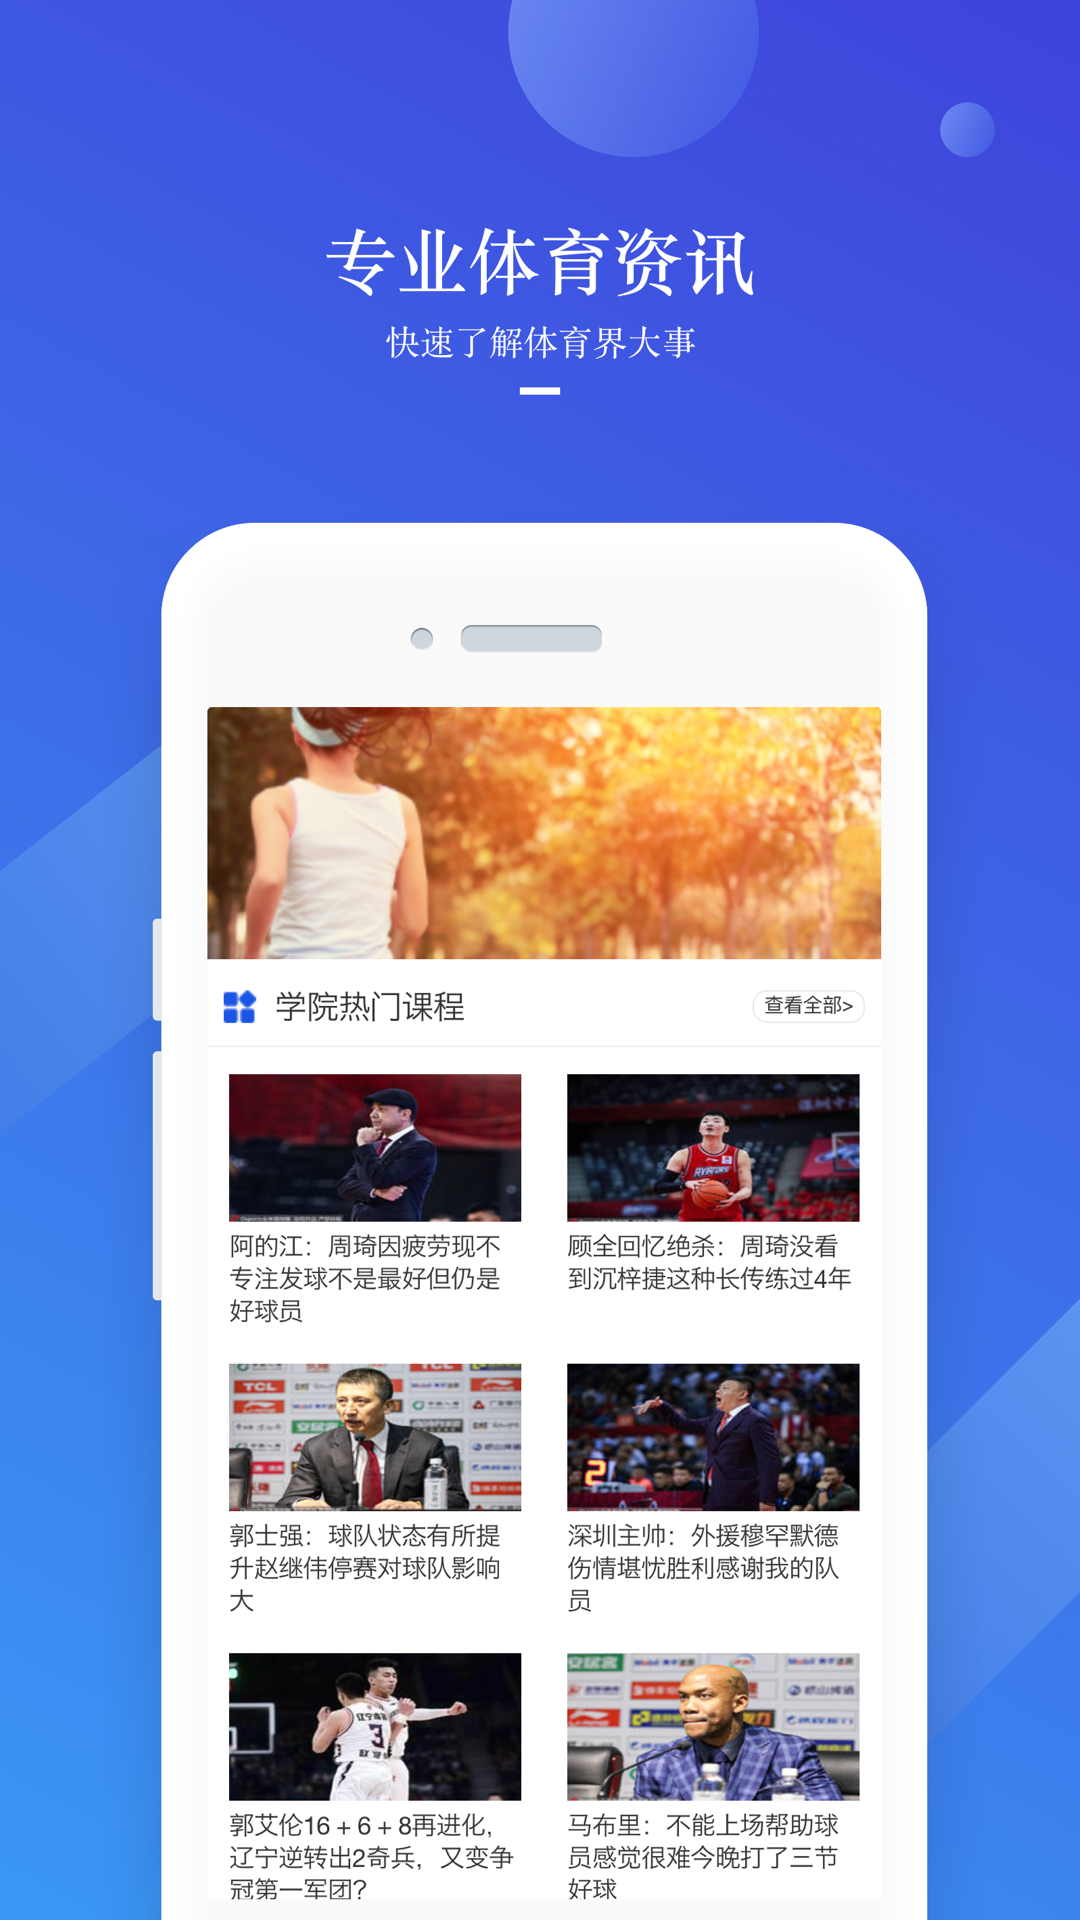 壹博体育电竞汇安卓版赤峰app实战开发